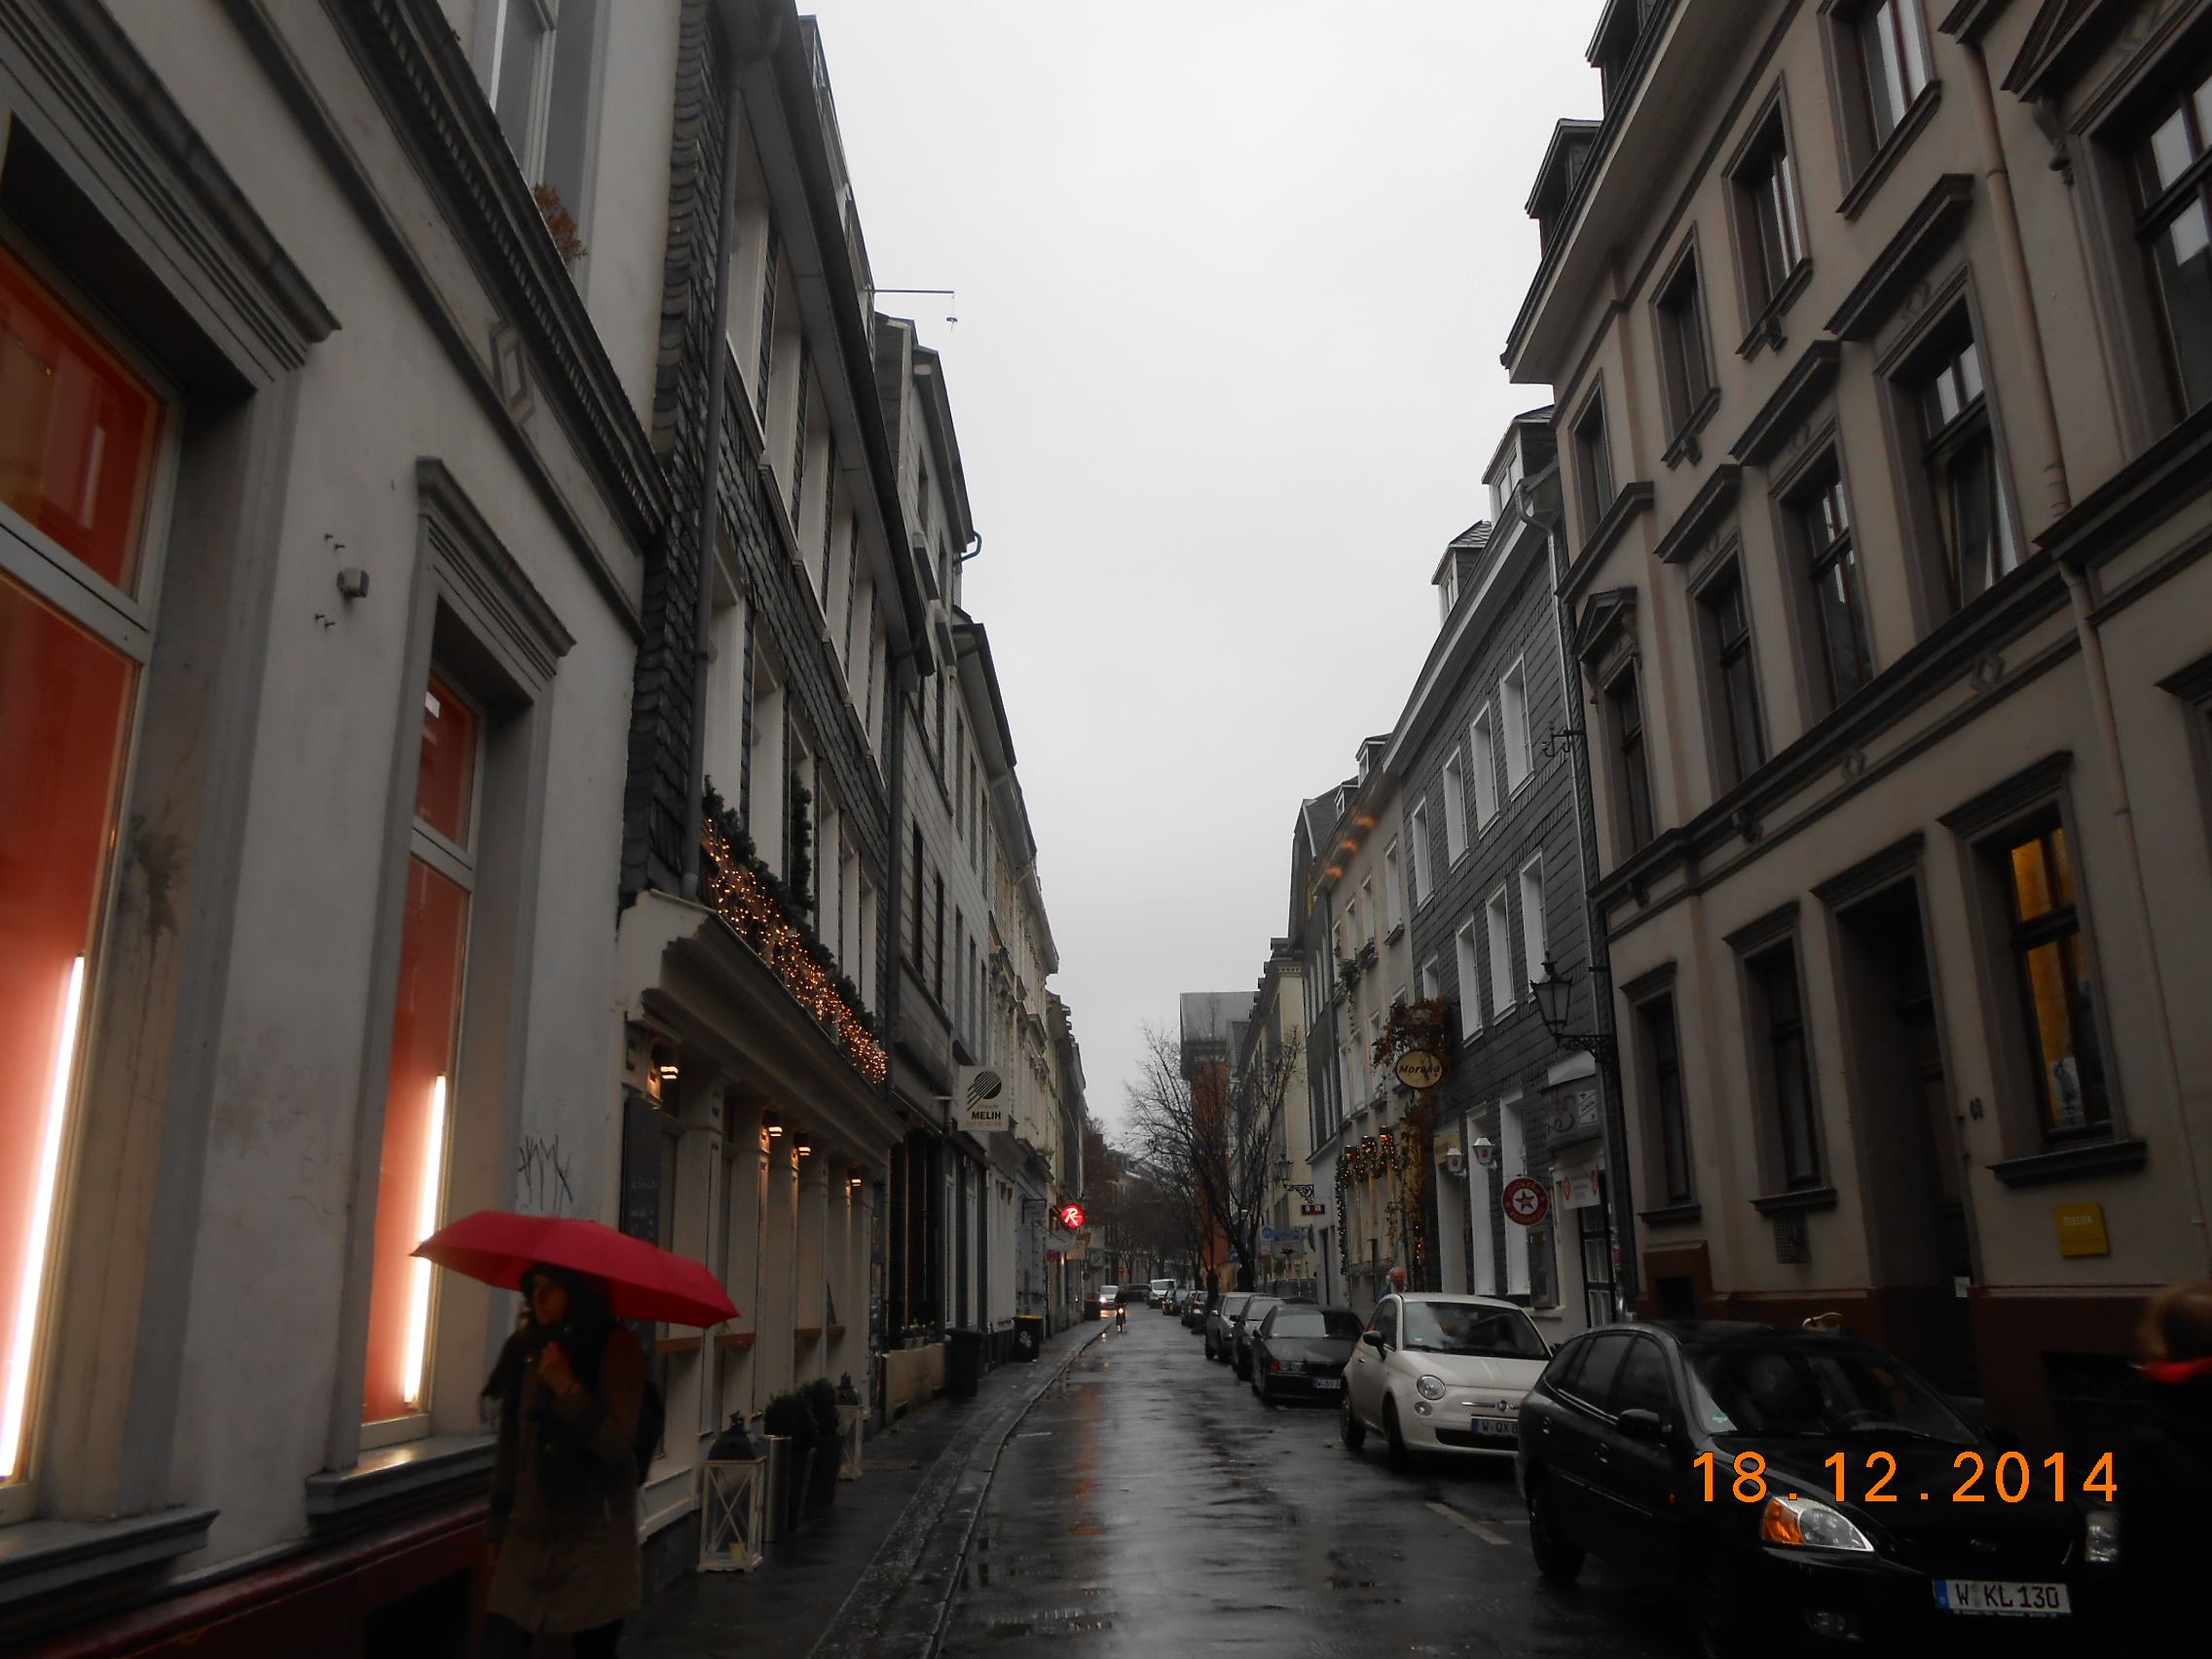 Das Luisenviertel bei Regen
Die Luisenstrasse, eine Vergnügungsmeile in Elberfeld